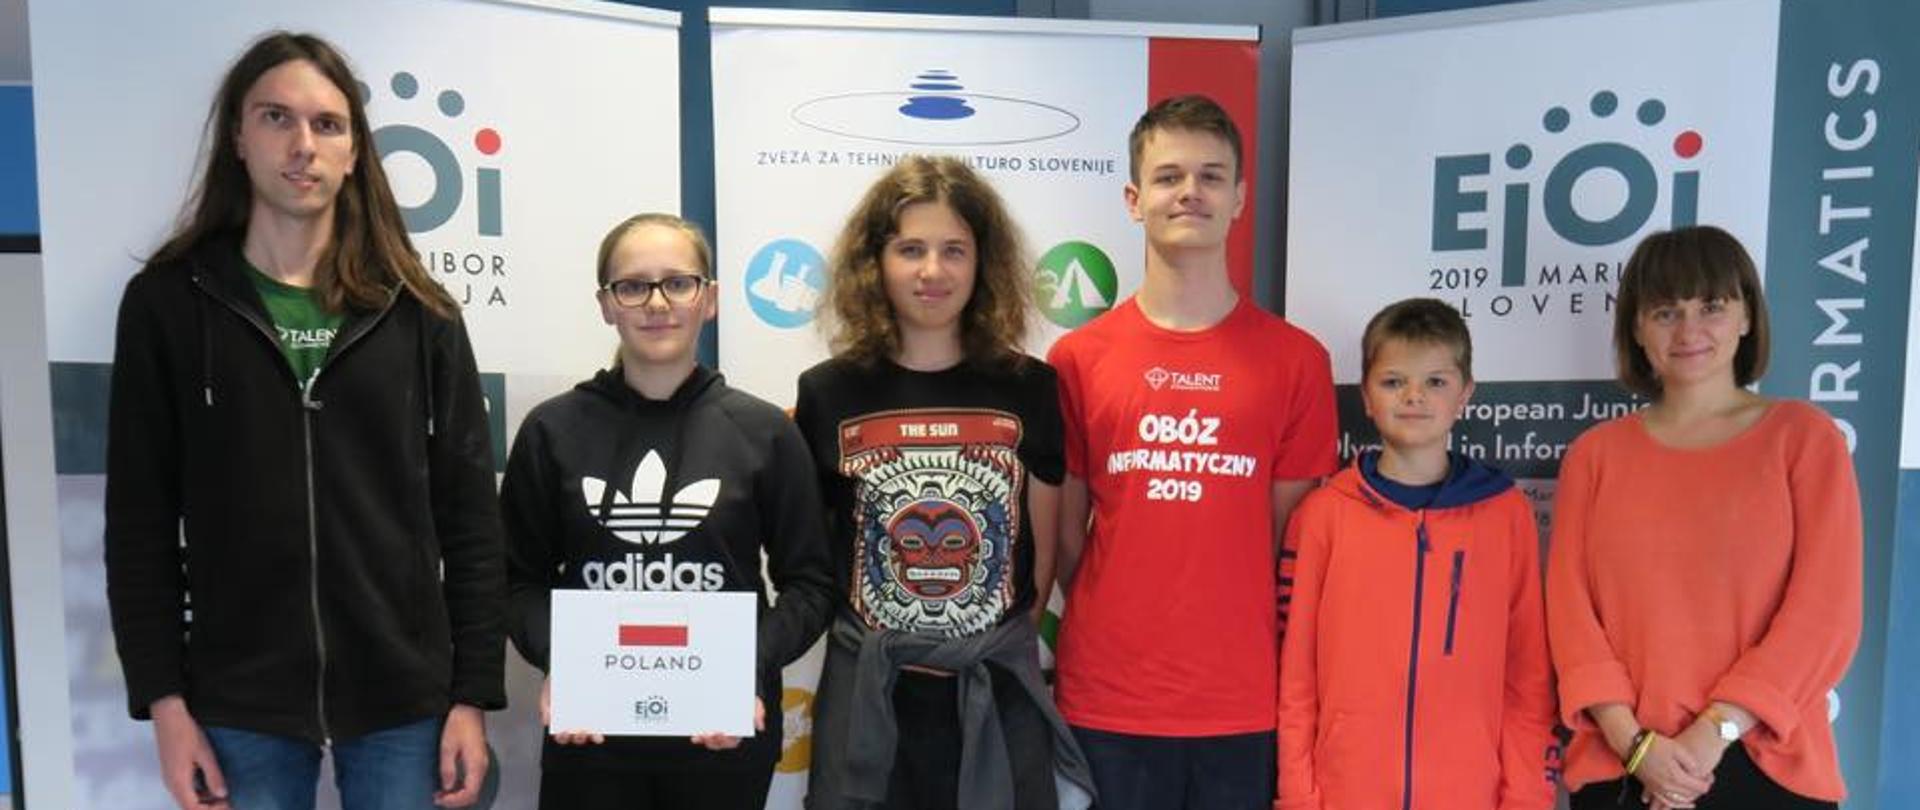 European Junior Olympiad in Informatics